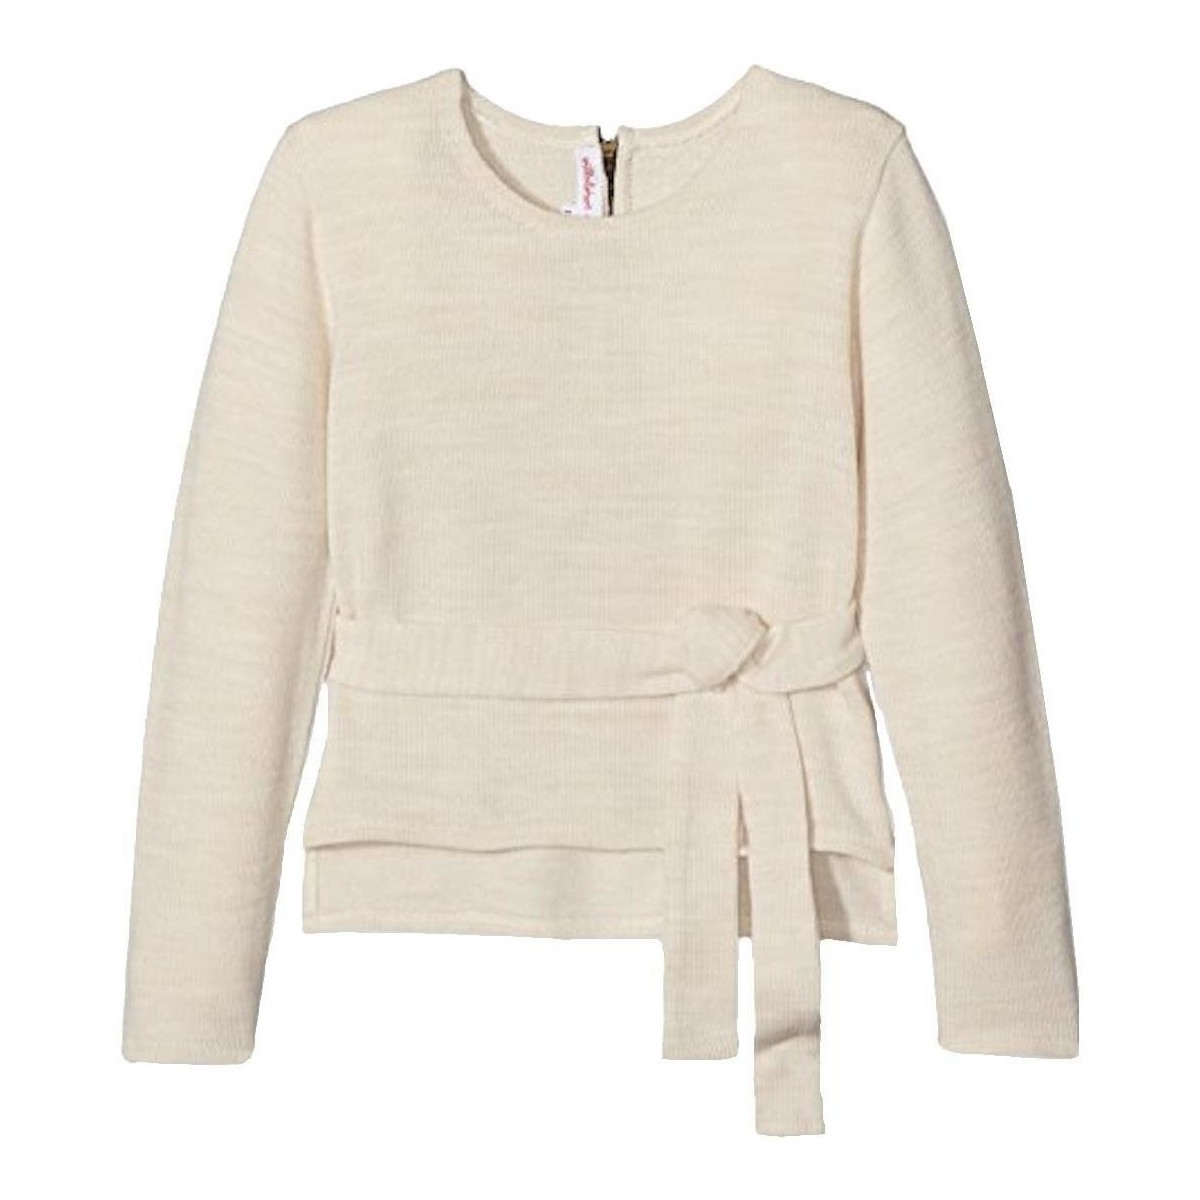 Textiel Meisjes Sweaters / Sweatshirts Villalobos  Beige